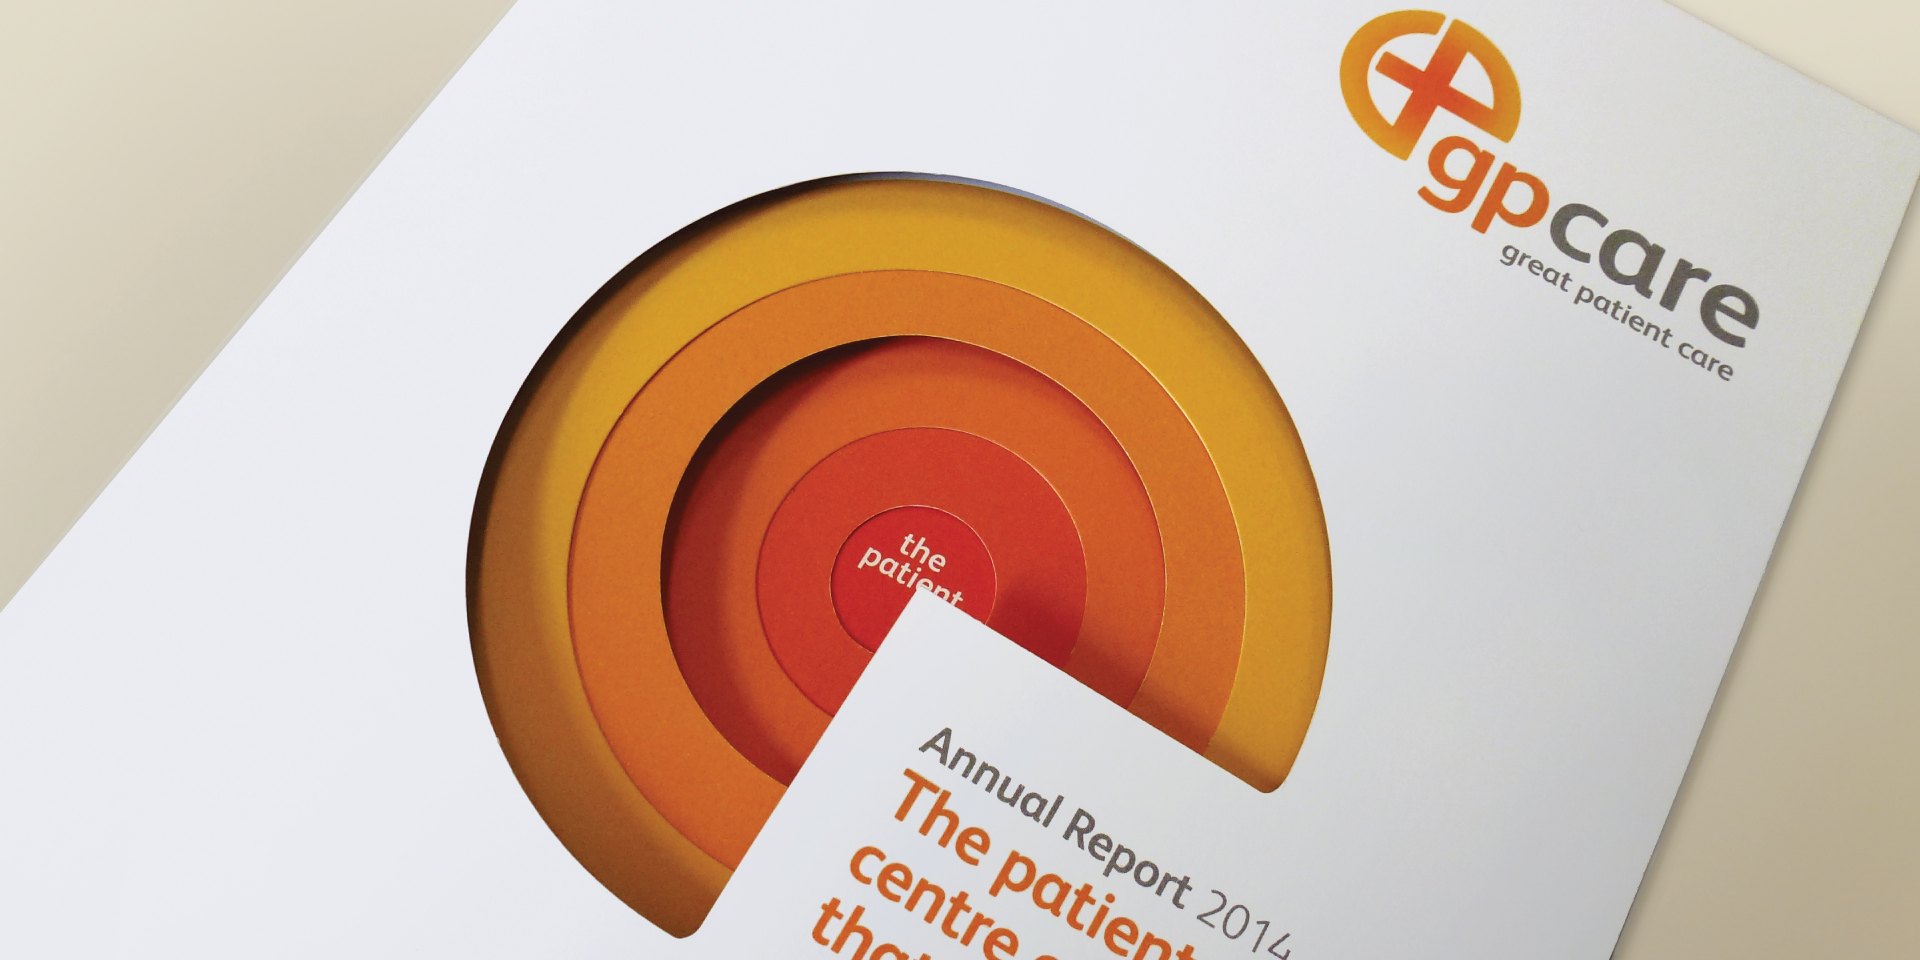 GP Care Annual Report design